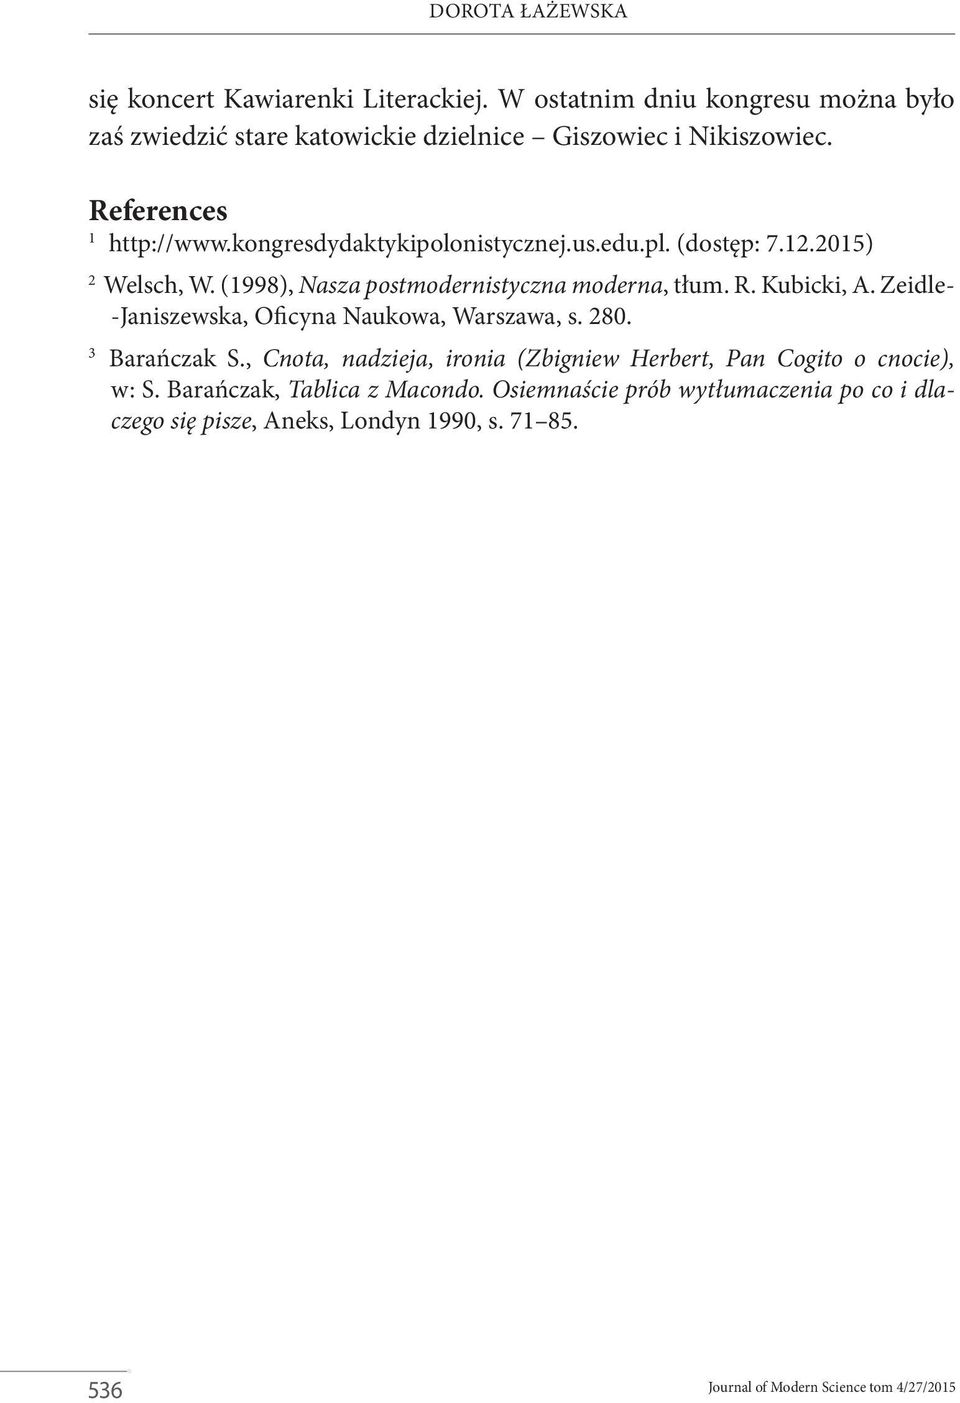 kongresdydaktykipolonistycznej.us.edu.pl. (dostęp: 7.12.2015) 2 Welsch, W. (1998), Nasza postmodernistyczna moderna, tłum. R. Kubicki, A.